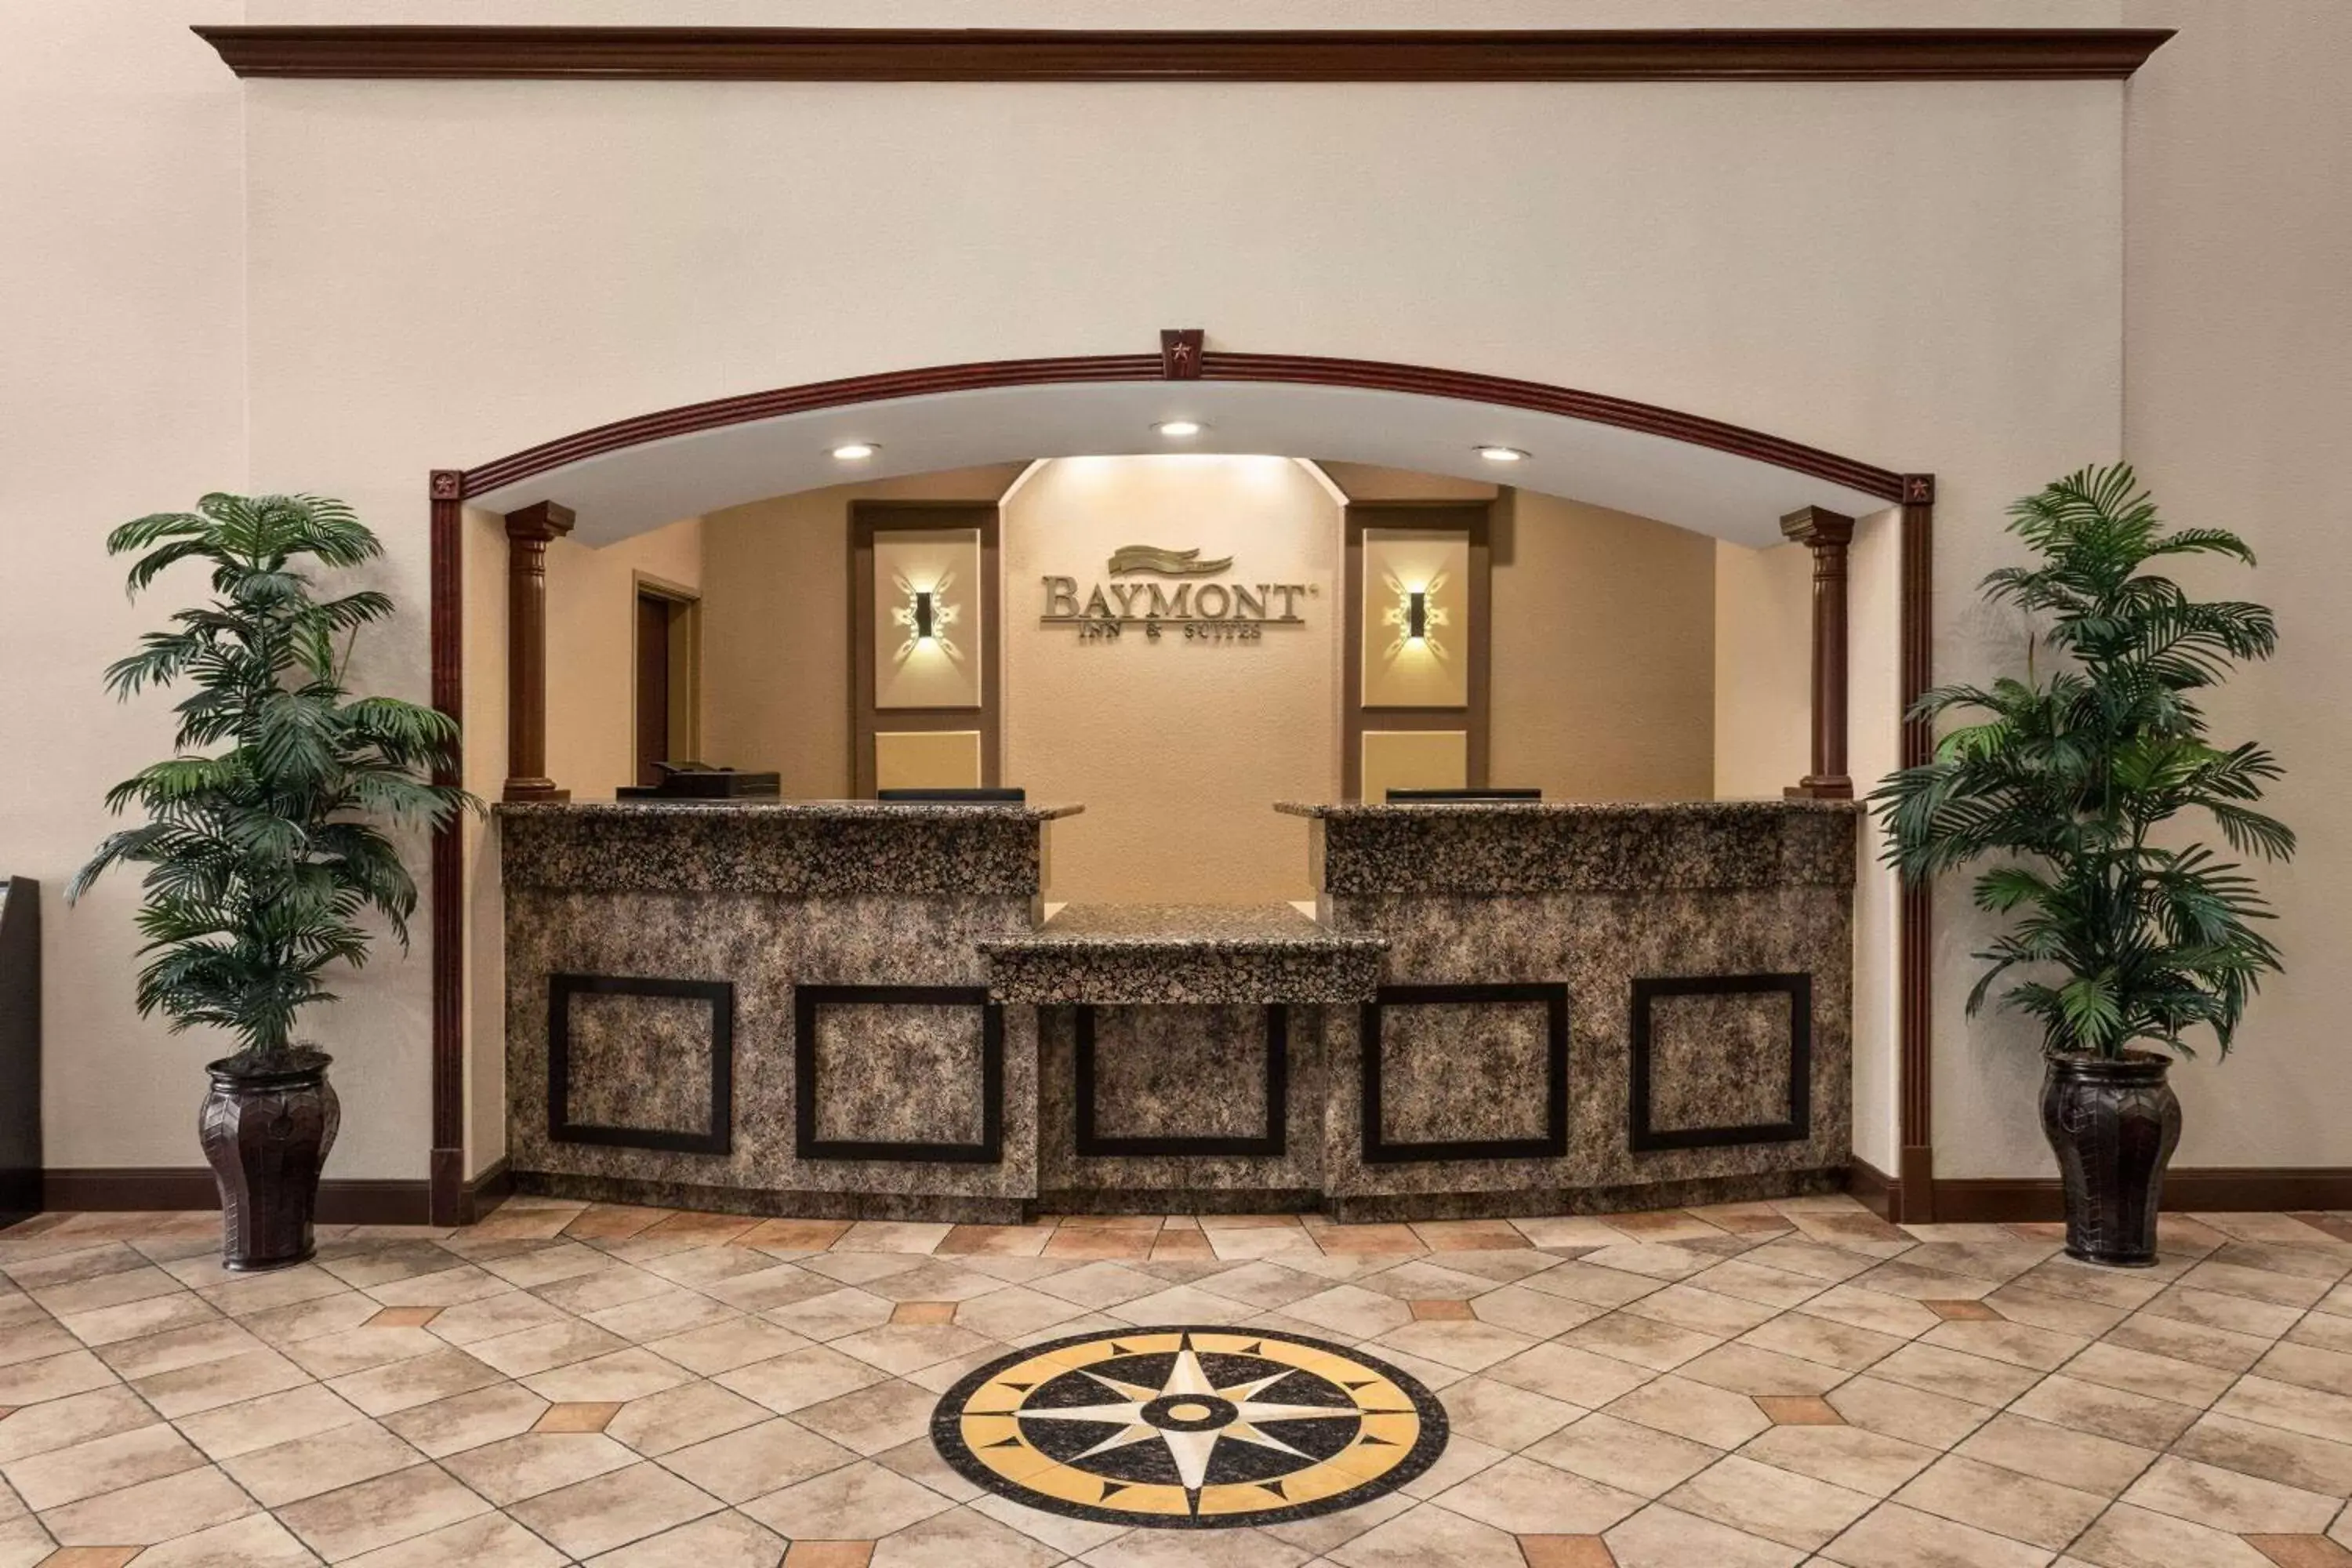 Lobby or reception, Lobby/Reception in Baymont by Wyndham Wichita Falls